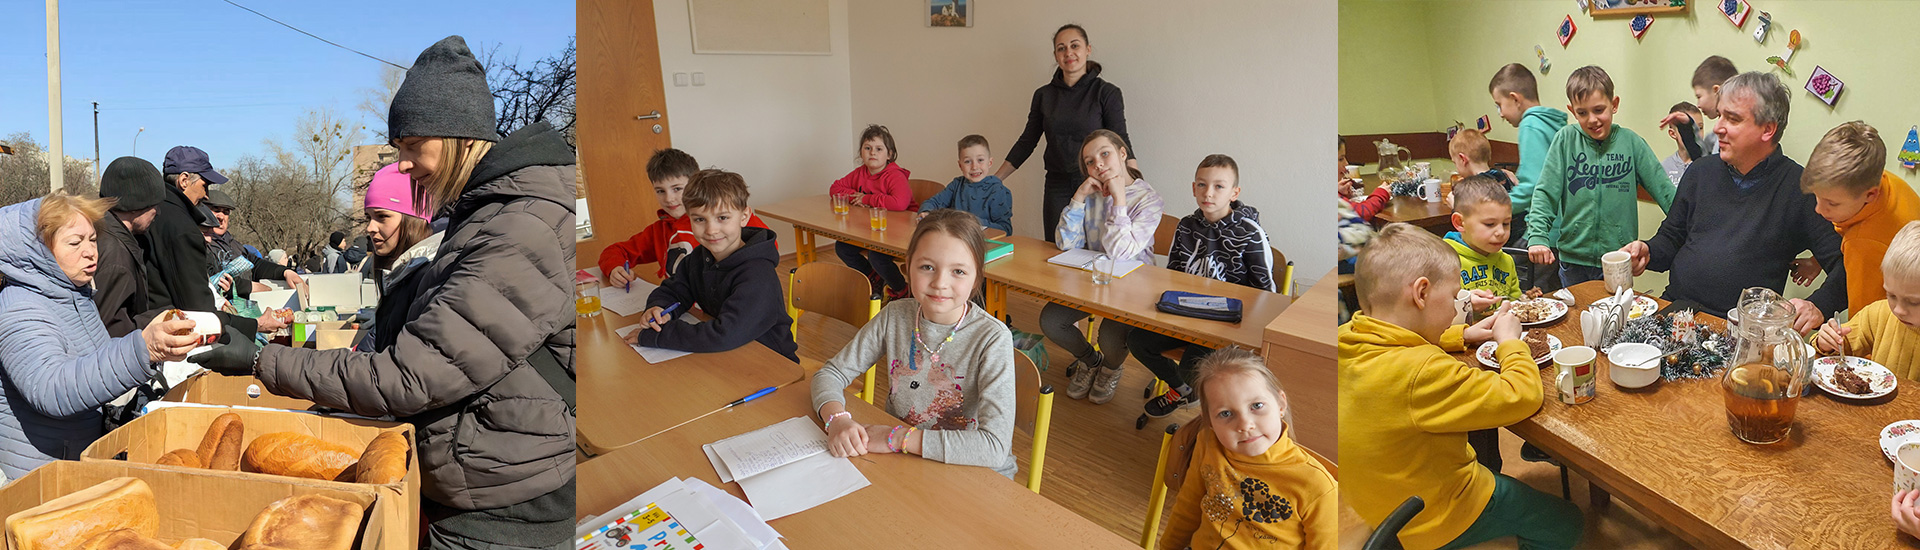 La atención a los menores, nuestra prioridad en la emergencia de Ucrania y en los países fronterizos